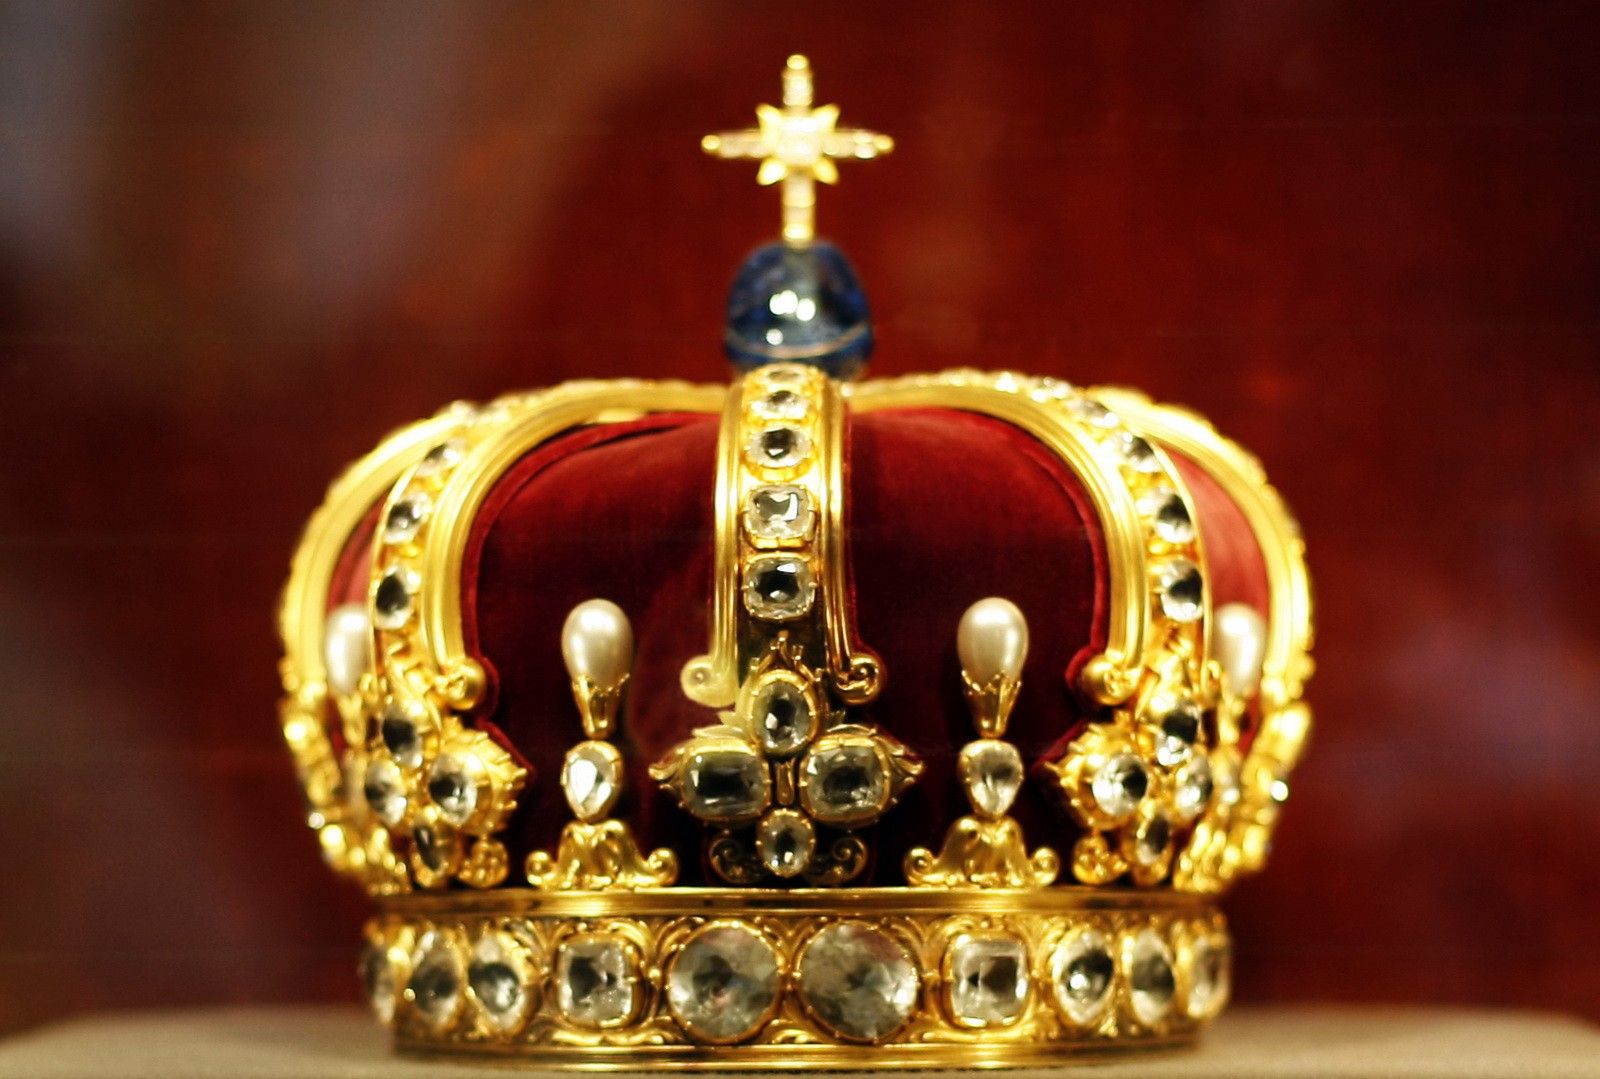 © Корона Вильгельма II, известная также под названием «корона Гогенцоллернов» — корона, изготовленная для Вильгельма II как монарха Пруссии, одна из королевских регалий Пруссии и единственная из этих регалий, изготовленная во времена Германской империи (1871-1918). Корона изготовлена из чистого золота и украшена бриллиантами, жемчугом и сапфирами. Диаметр короны 21 см, высота 20 см. Основание диадемы имеет гравированный край, украшенный 24 большими алмазными розами с орнаментом в форме листьев. От основания отходят восемь больших и восемь маленьких зубцов, маленькие зубцы изогнуты в ширину с обеих сторон. Большие зубцы представляют собой восемь кронштейнов-полуарок, сходящихся к одной вершине, каждая полуарка украшена восемью или десятью крупными бриллиантами. На вершине короны размещён крест, украшенный алмазами и крупным яйцевидным сапфиром. Внутренняя часть короны выстлана красным бархатом. В общей сложности корона содержит 142 алмазных розы, 18 бриллиантов, 2 сапфира и 8 крупных жемчужин...